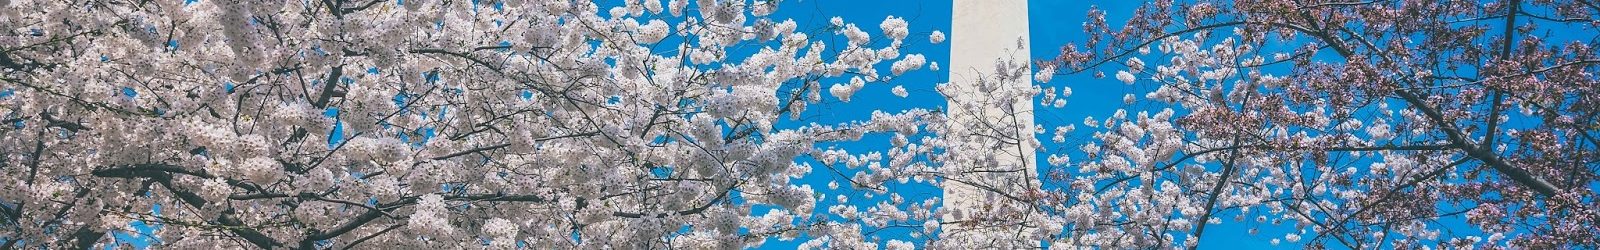 樱花季 – 华盛顿特区赏樱指南